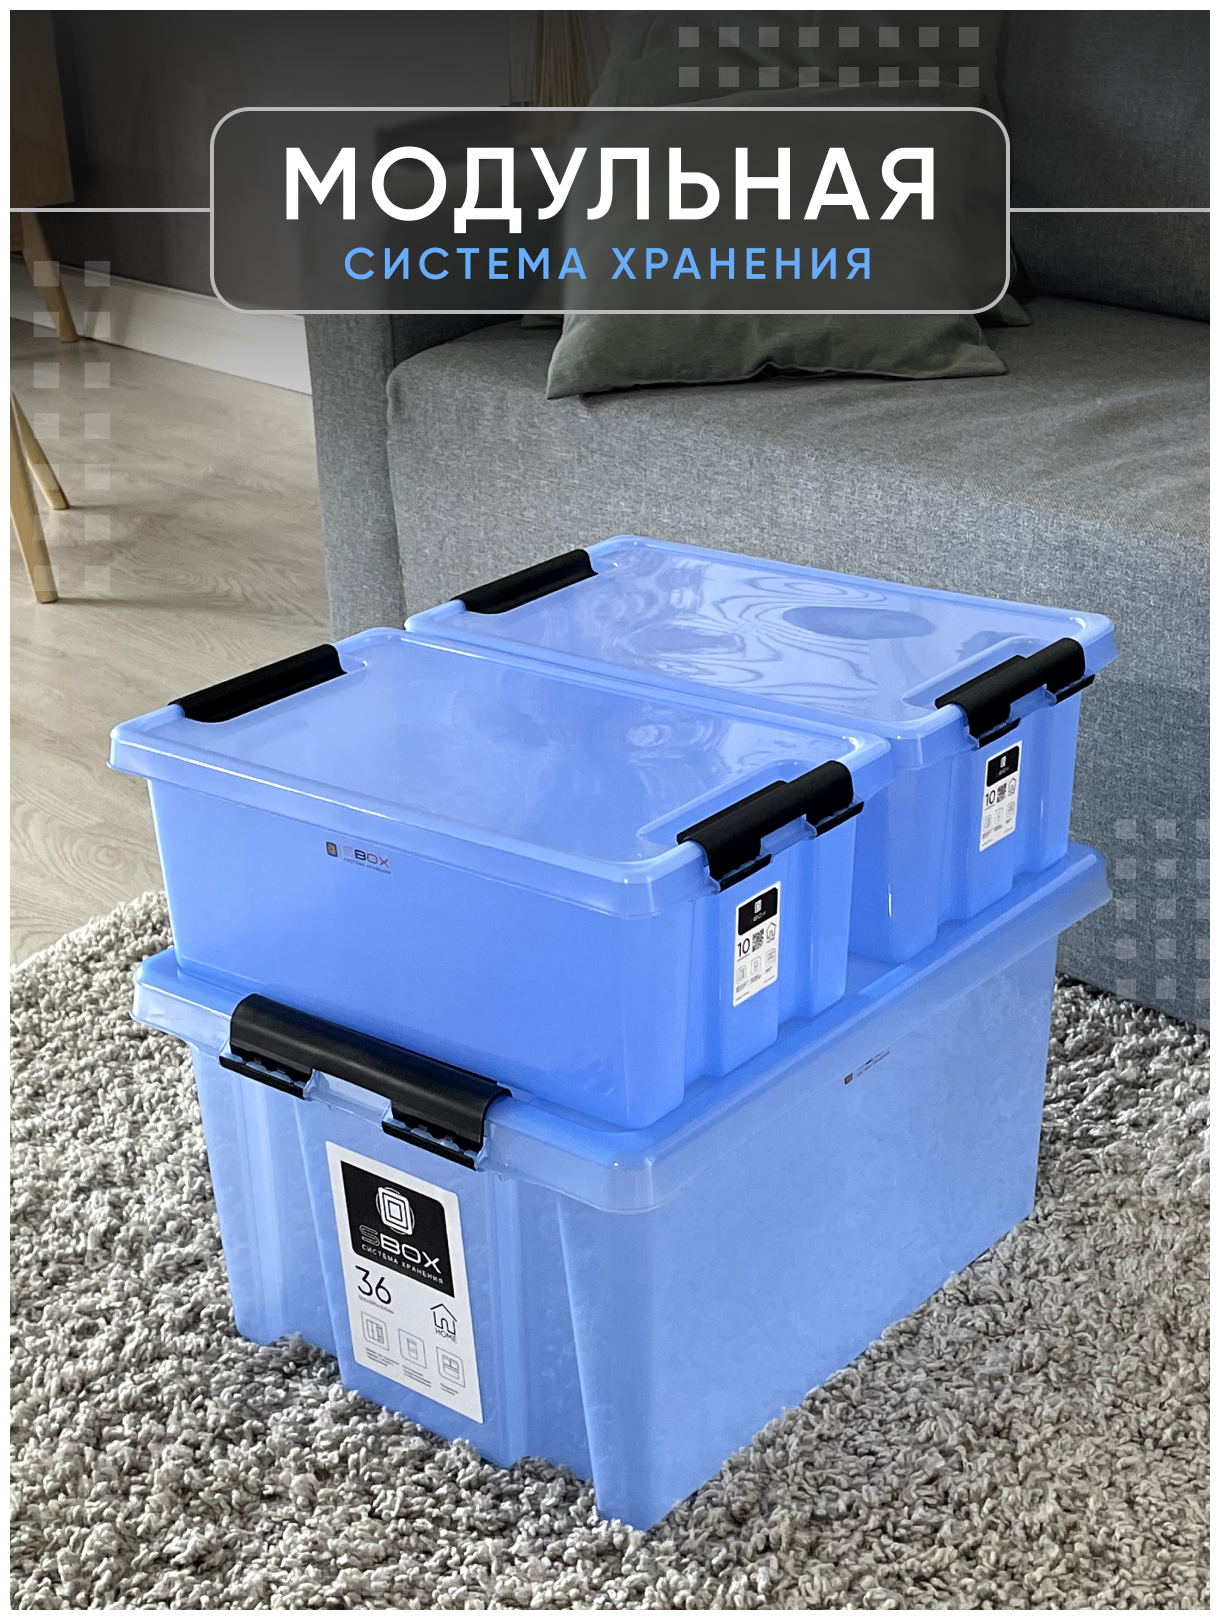 Контейнер пластиковый прозрачный синий с крышкой для хранения продуктов, вещей или игрушек, набор 3 штуки, 10л, SBOX - фотография № 8